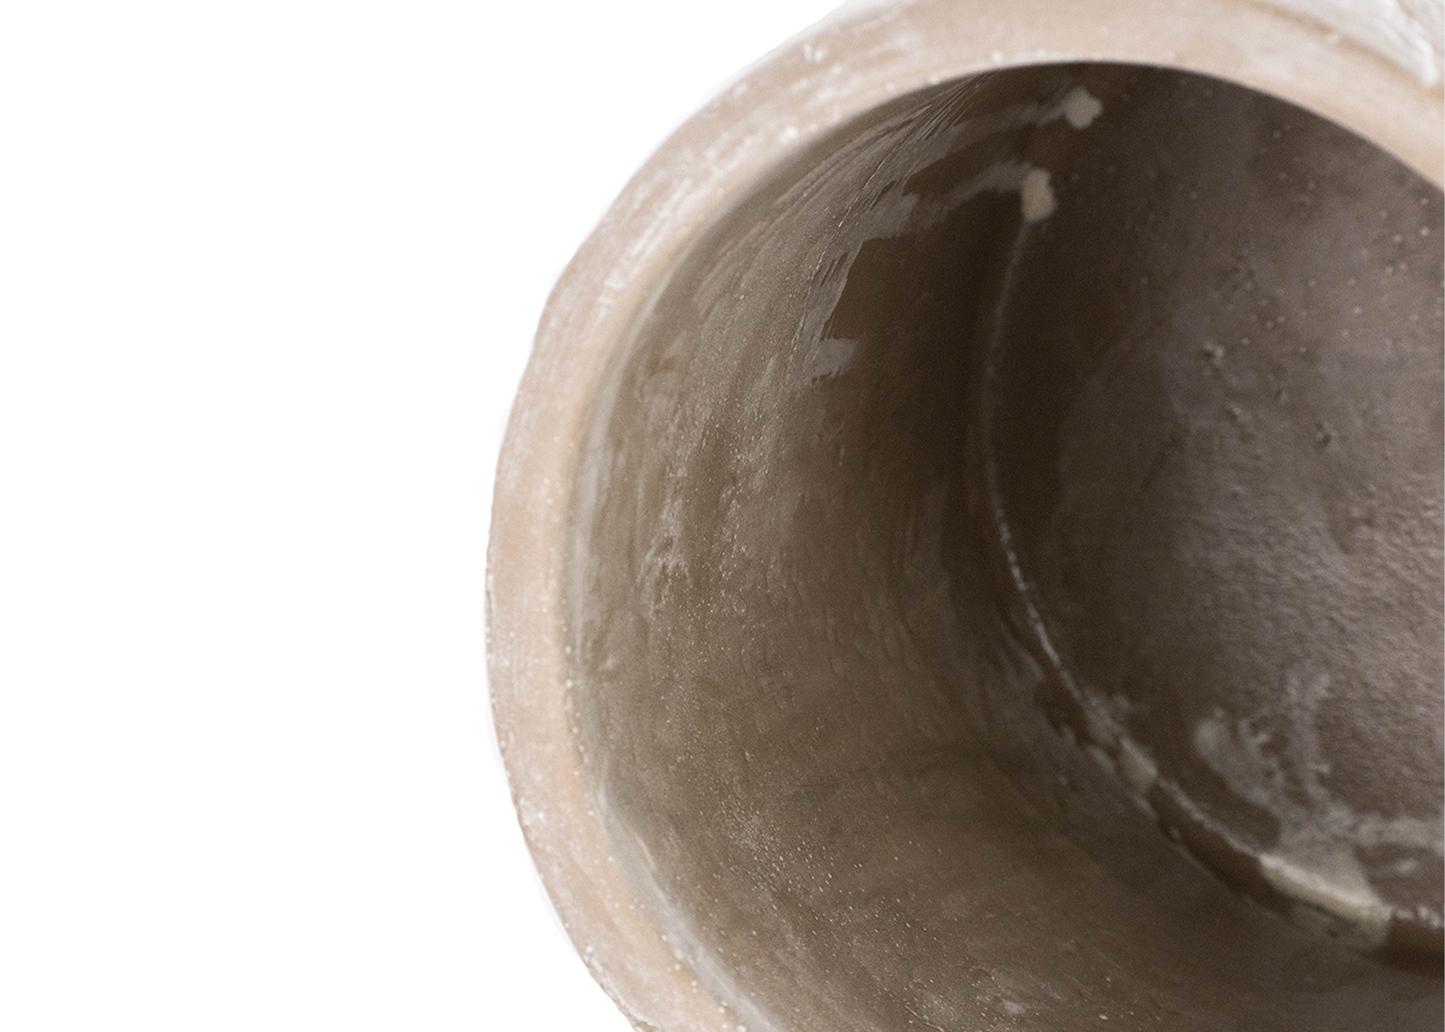 White Wash Stone Cylinder Vase